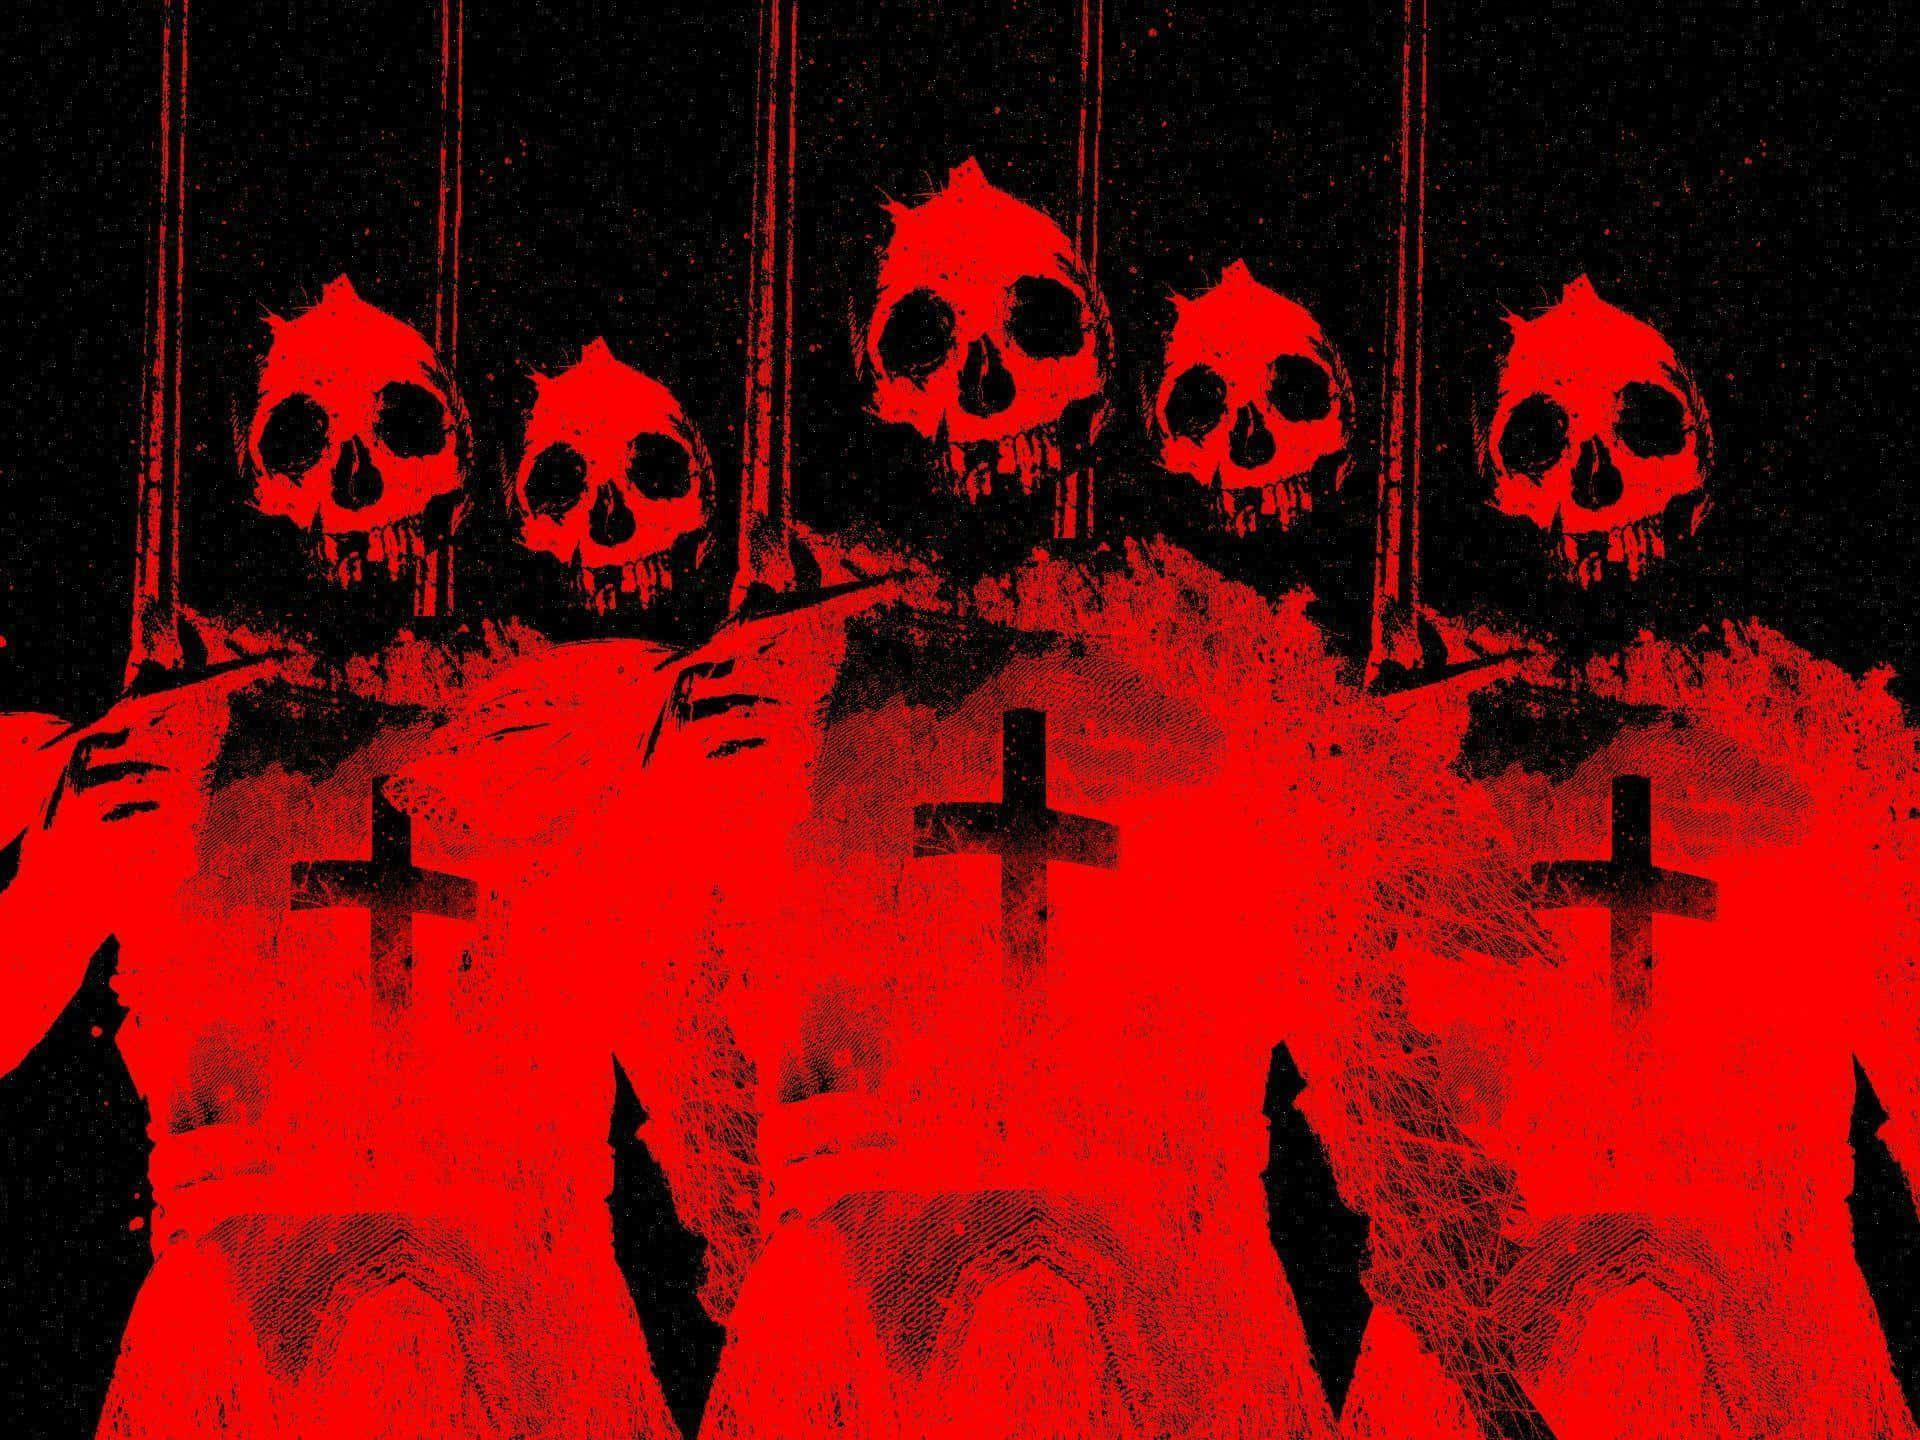 Red Skull Cross Imagery Background